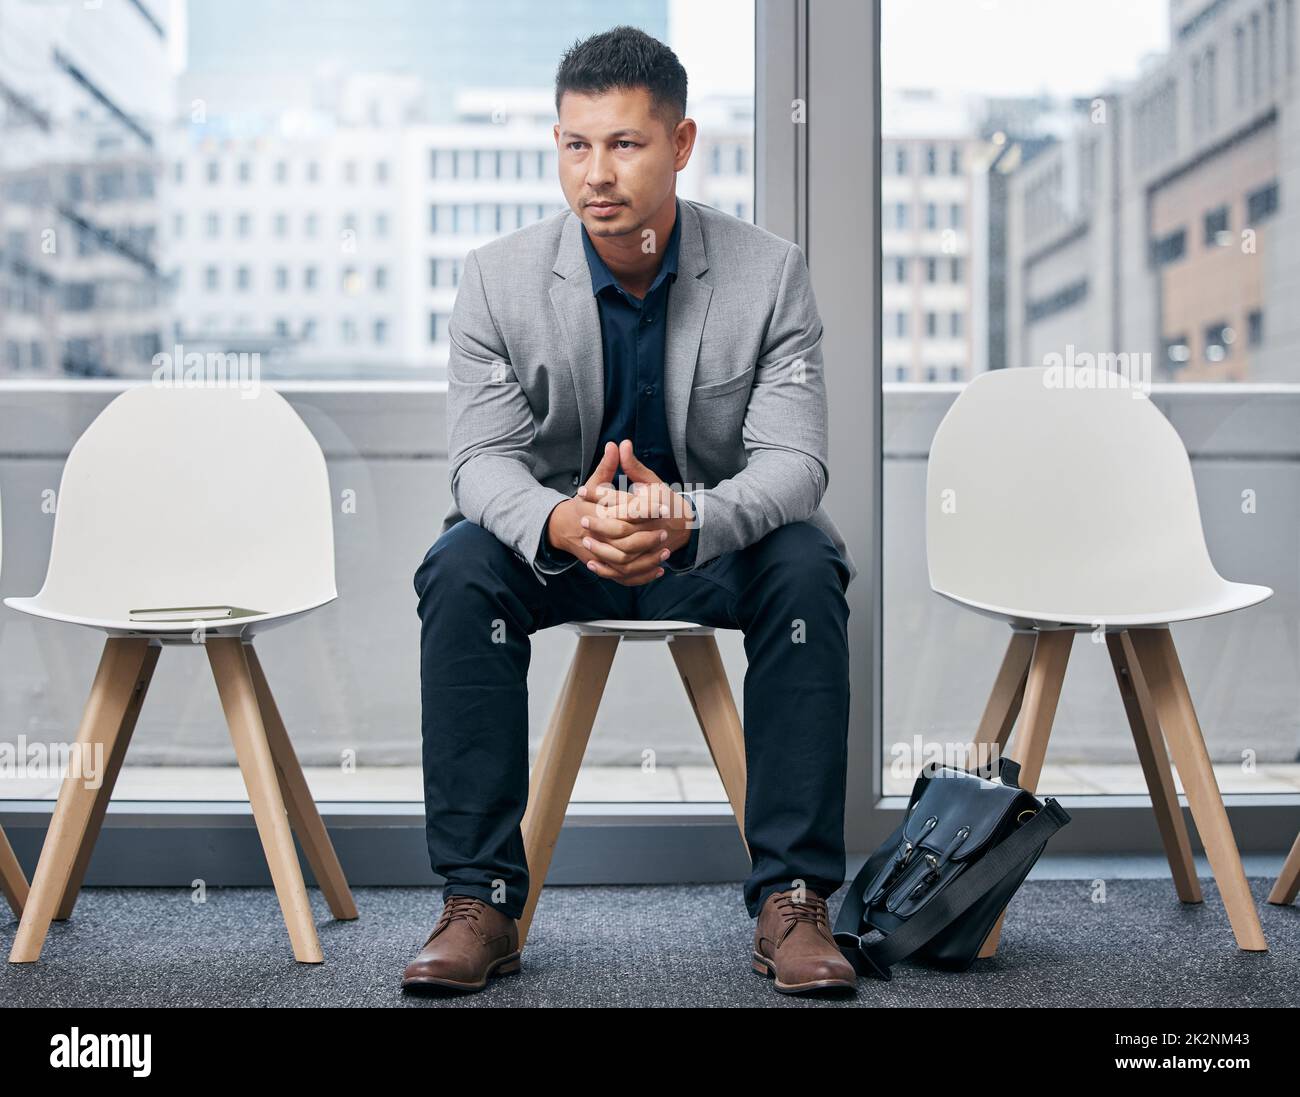 En attente d'être appelé. Photo d'un jeune homme d'affaires assis dans une salle d'attente. Banque D'Images